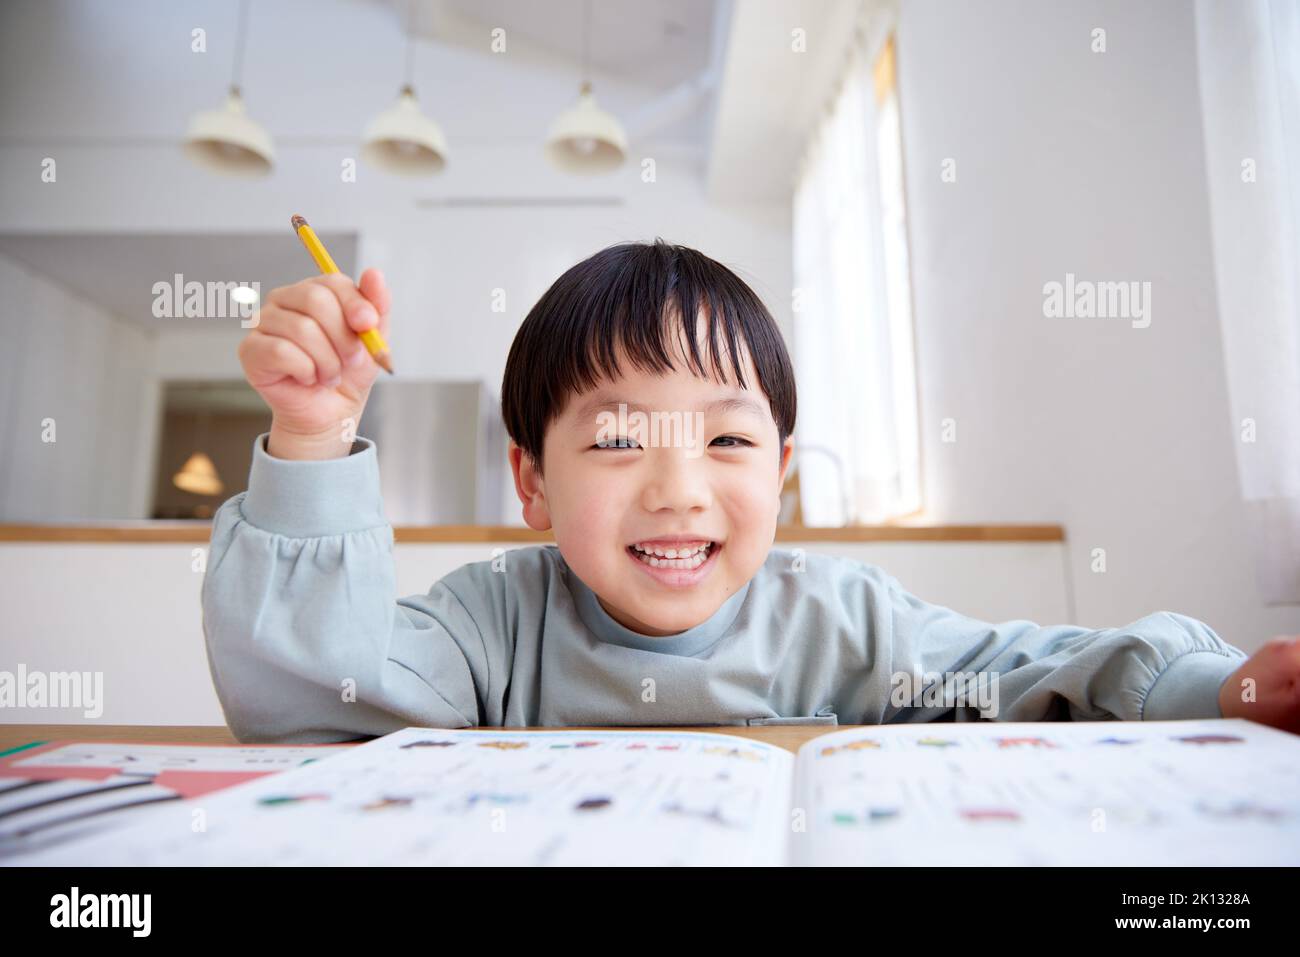 Japanese kid studying Stock Photo